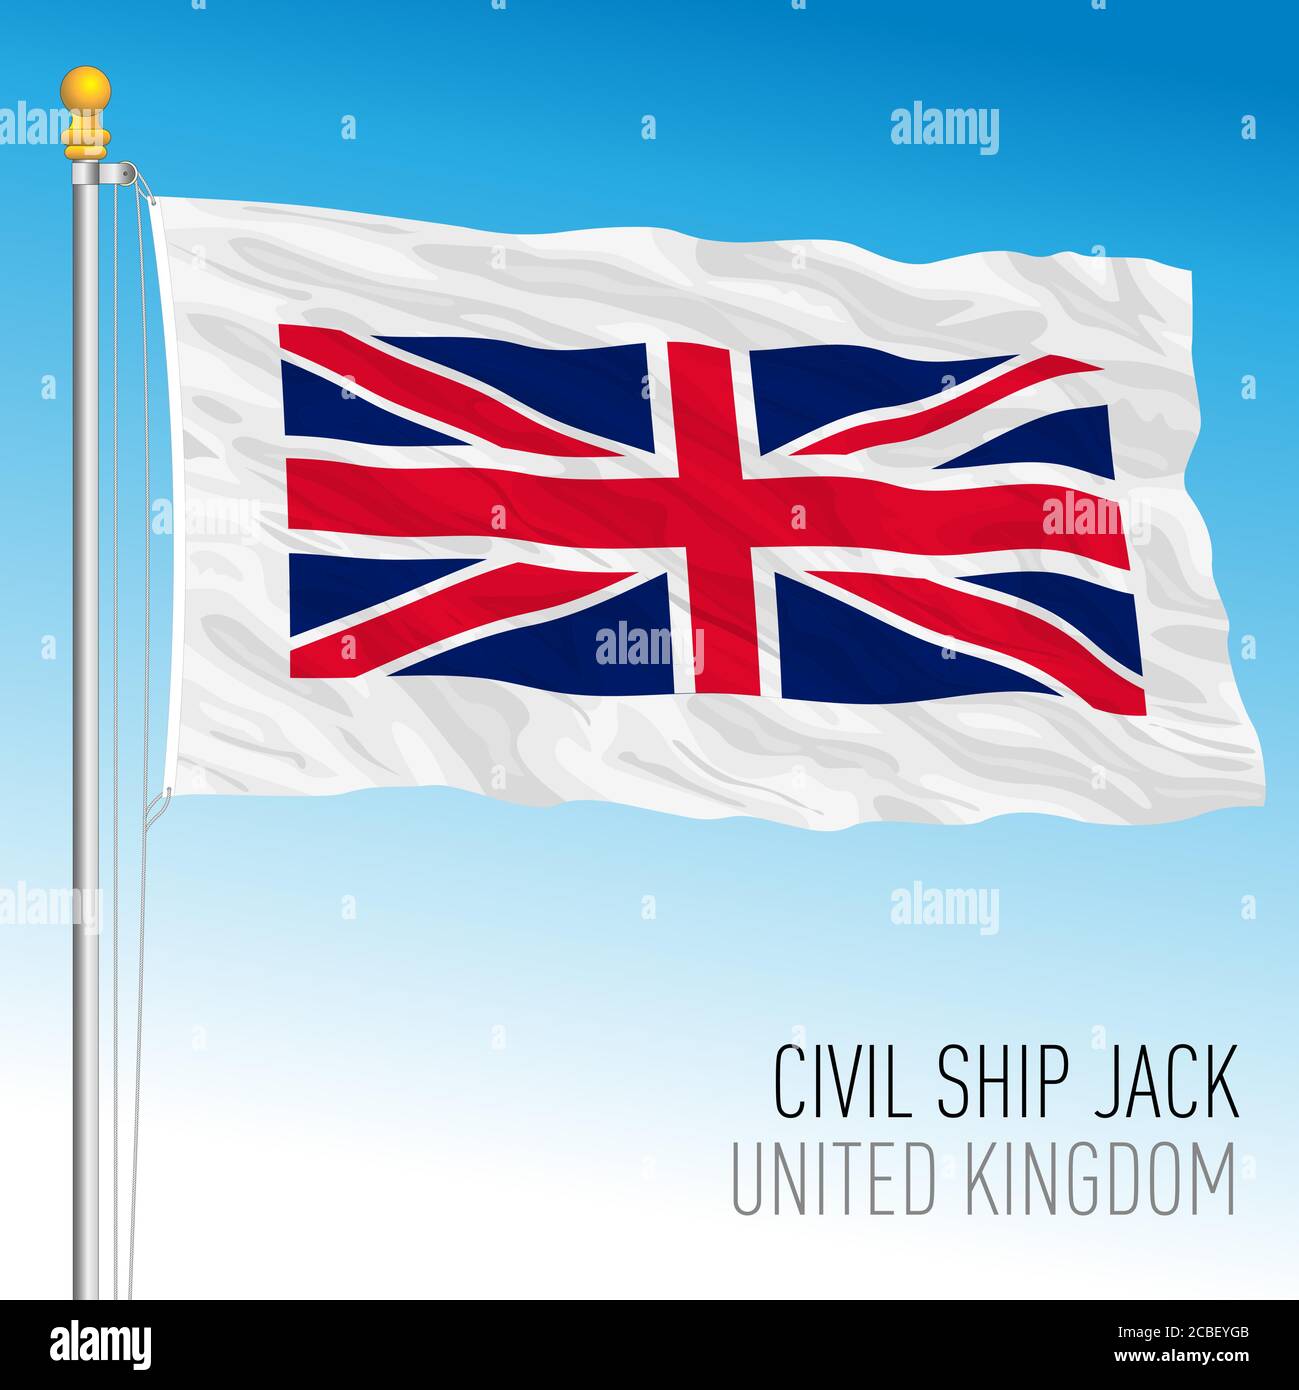 Drapeau de Jack utilisé dans la marine civile britannique à l'arc du navire, Royaume-Uni, illustration vectorielle Illustration de Vecteur